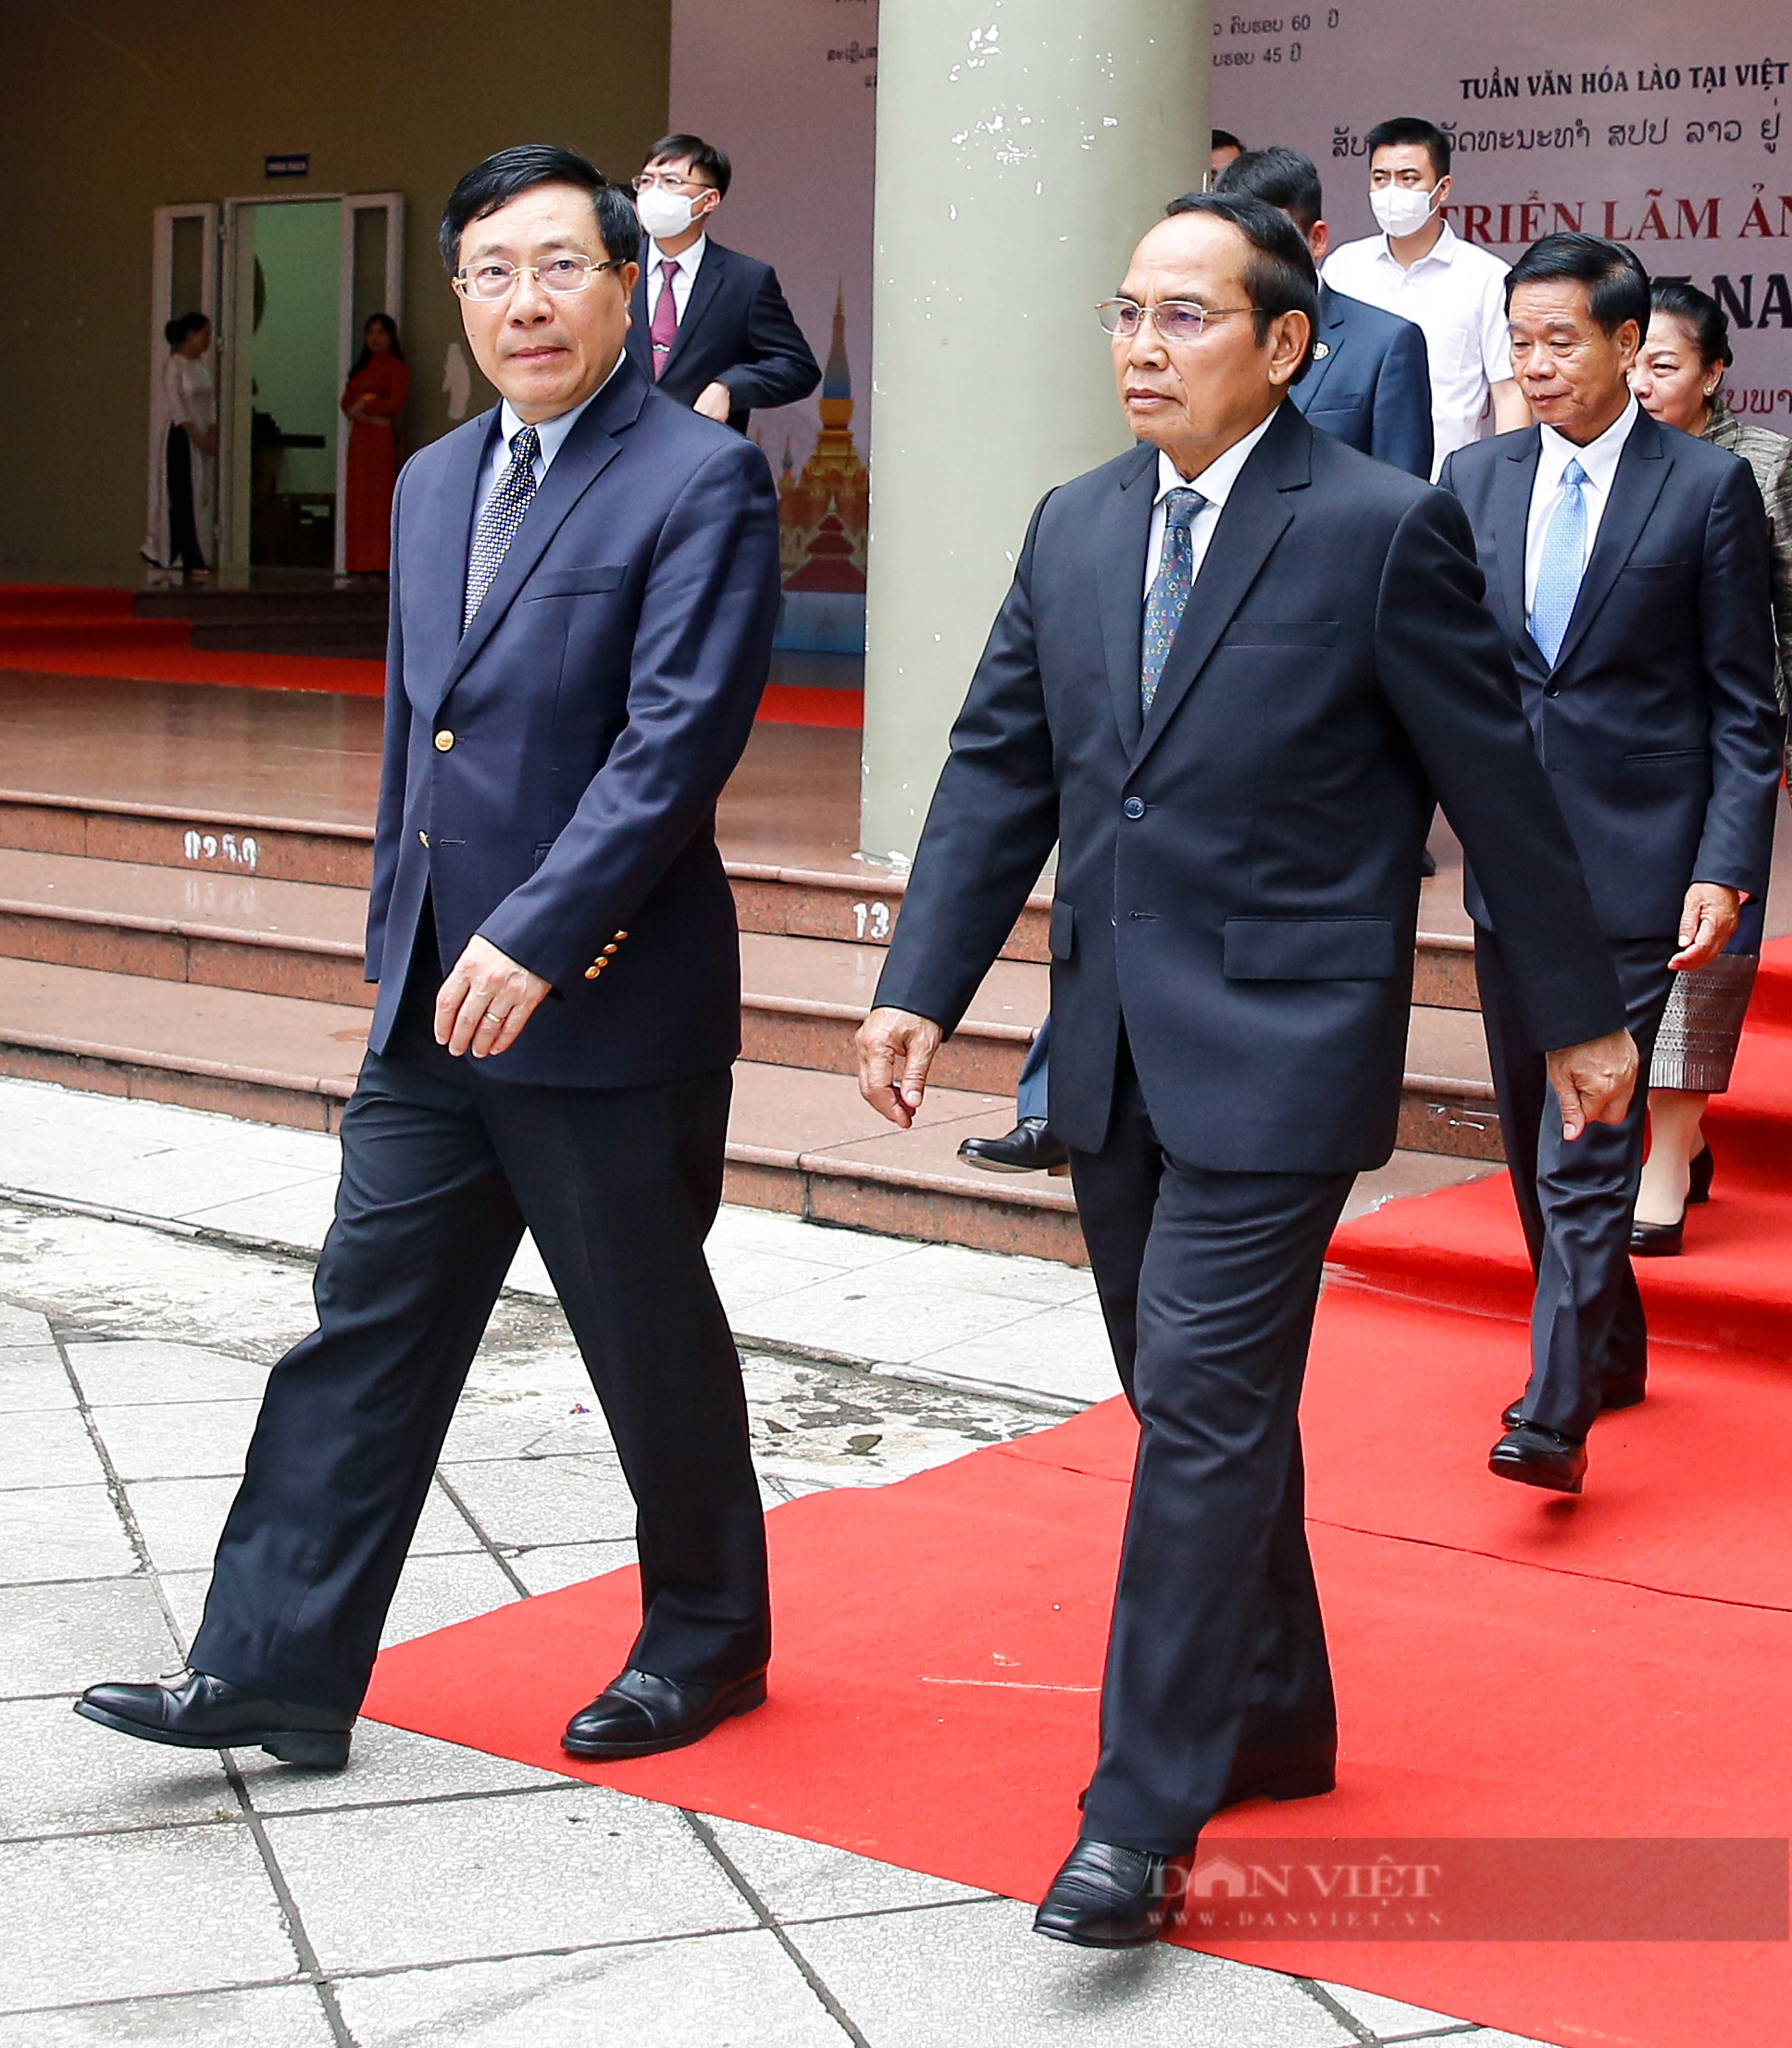 Phó Chủ tịch nước Lào dự Khai mạc triển lãm ảnh 'Tình hữu nghị Lào - Việt Nam đời đời bền vững' - Ảnh 2.